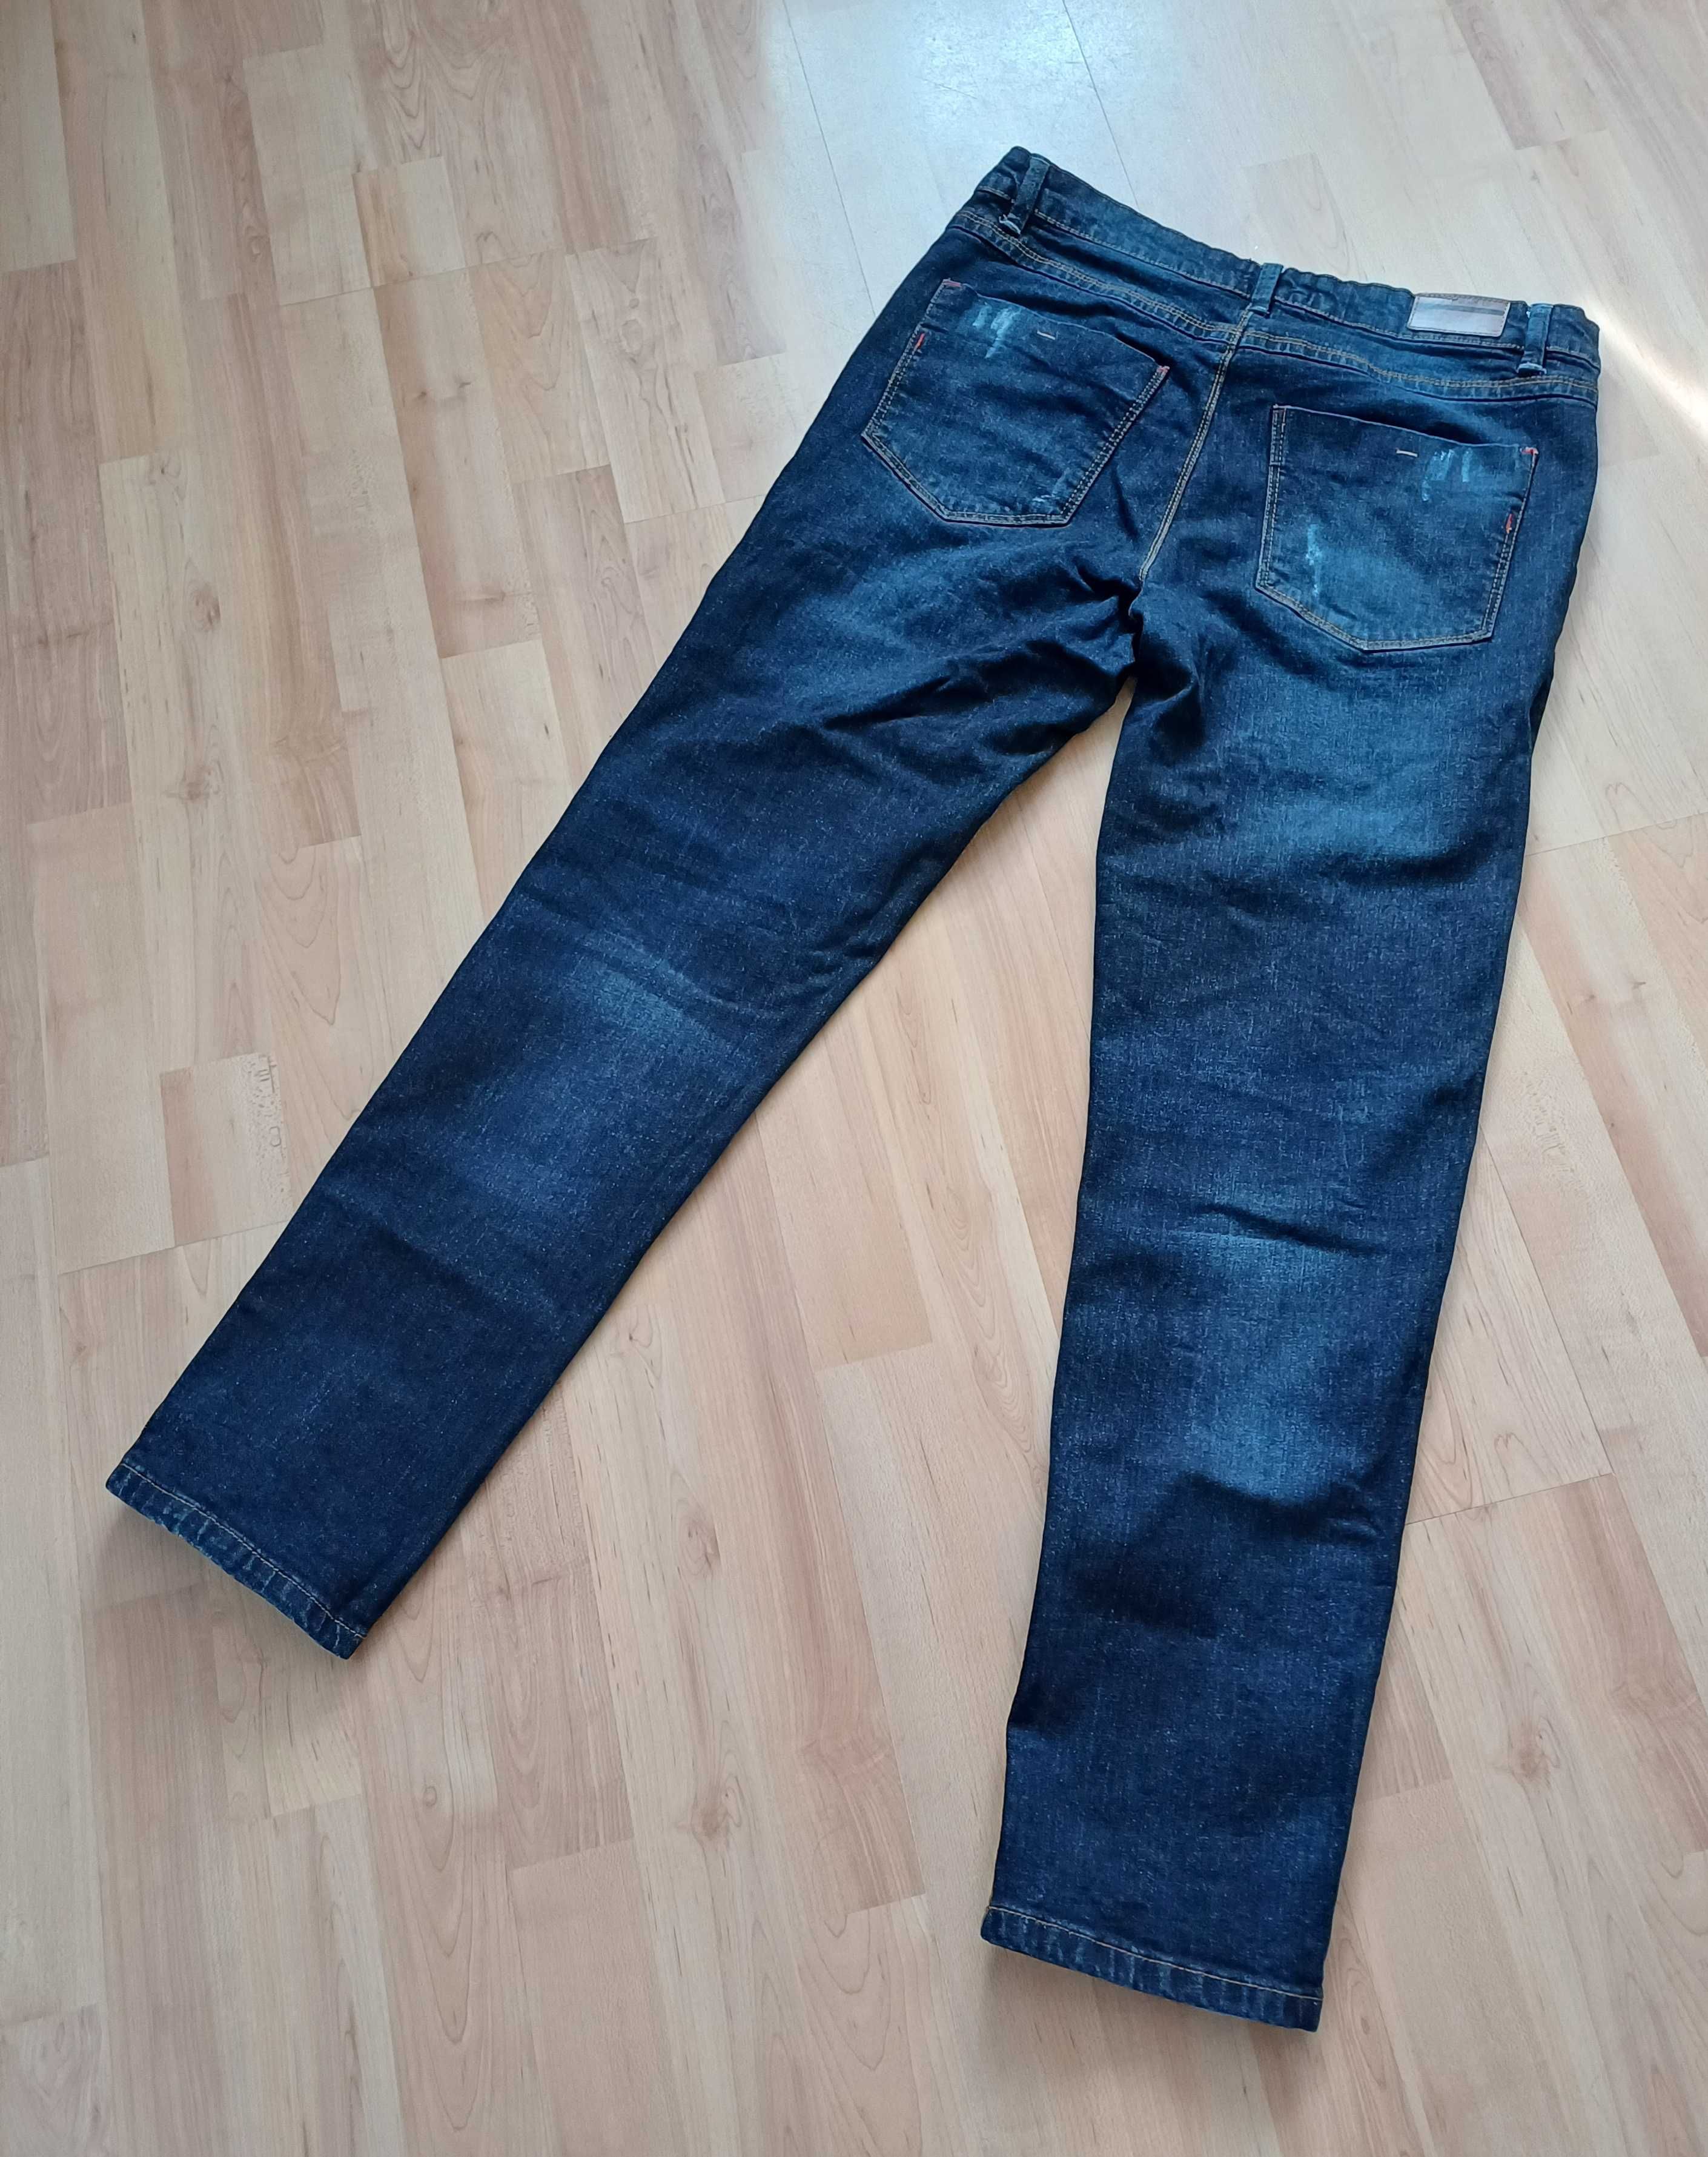 Spodnie długie jeans męskie granatowe wycierane Carry 40/L bawełna